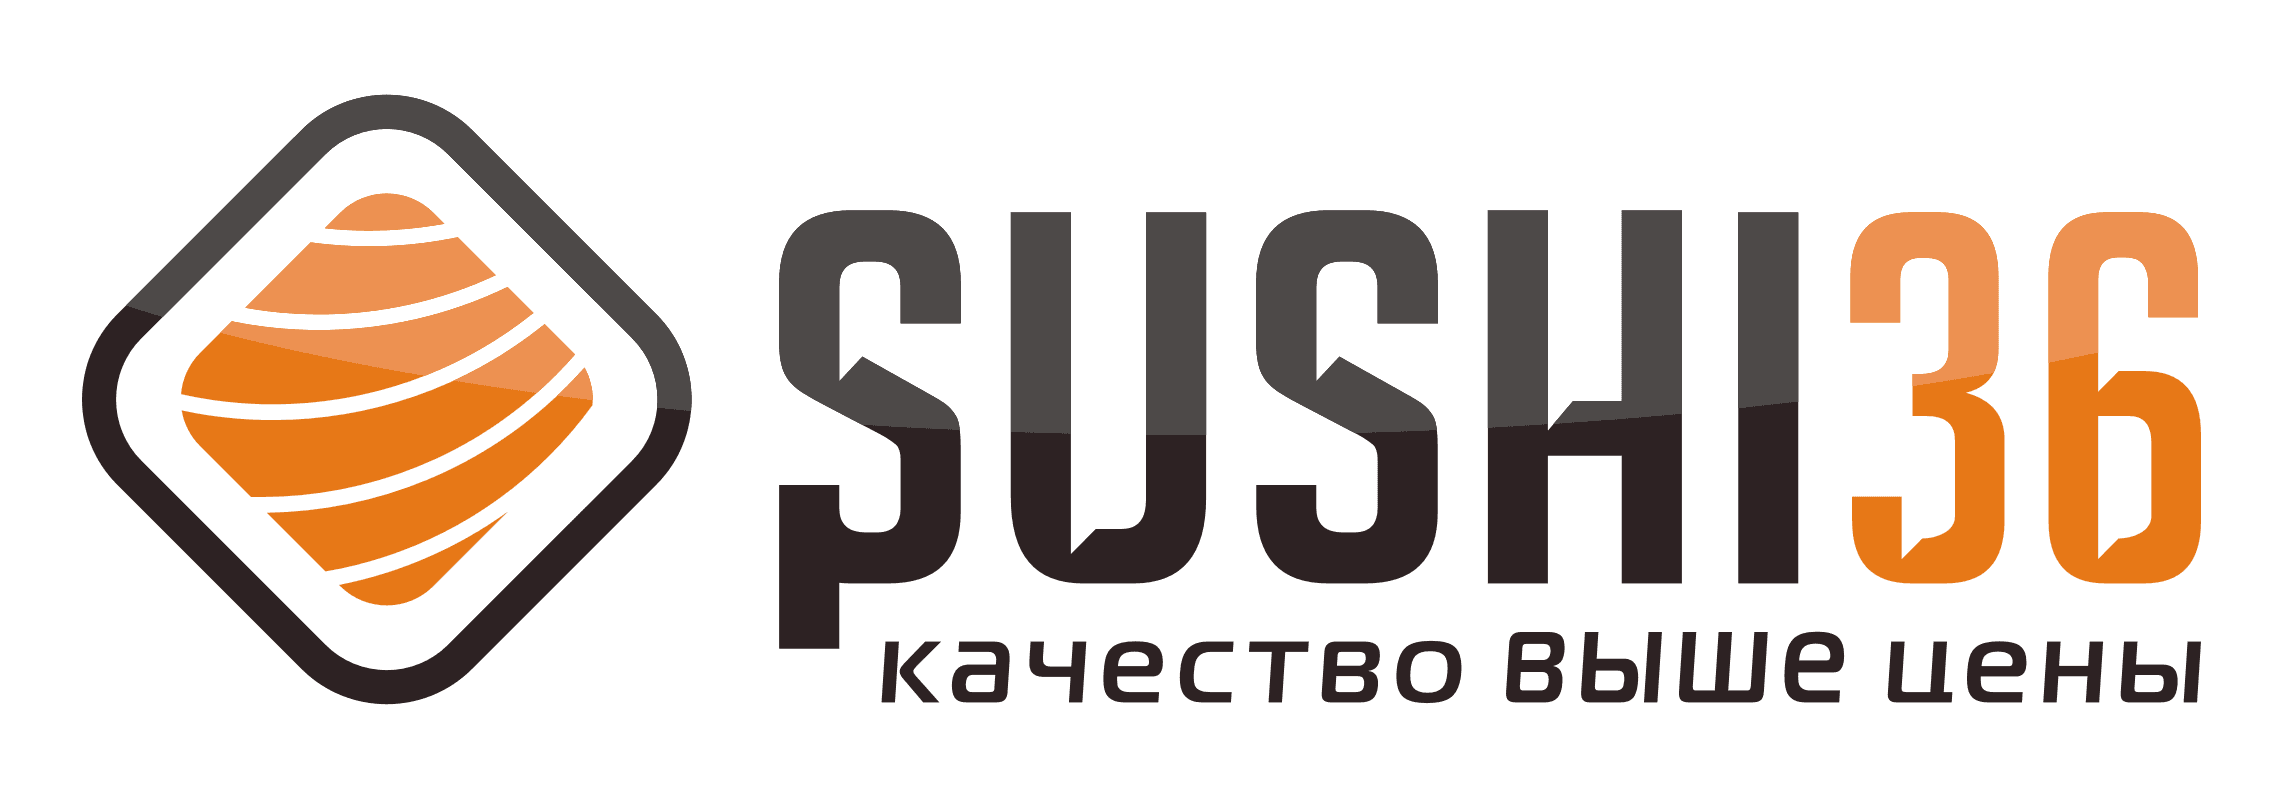 Sushi36